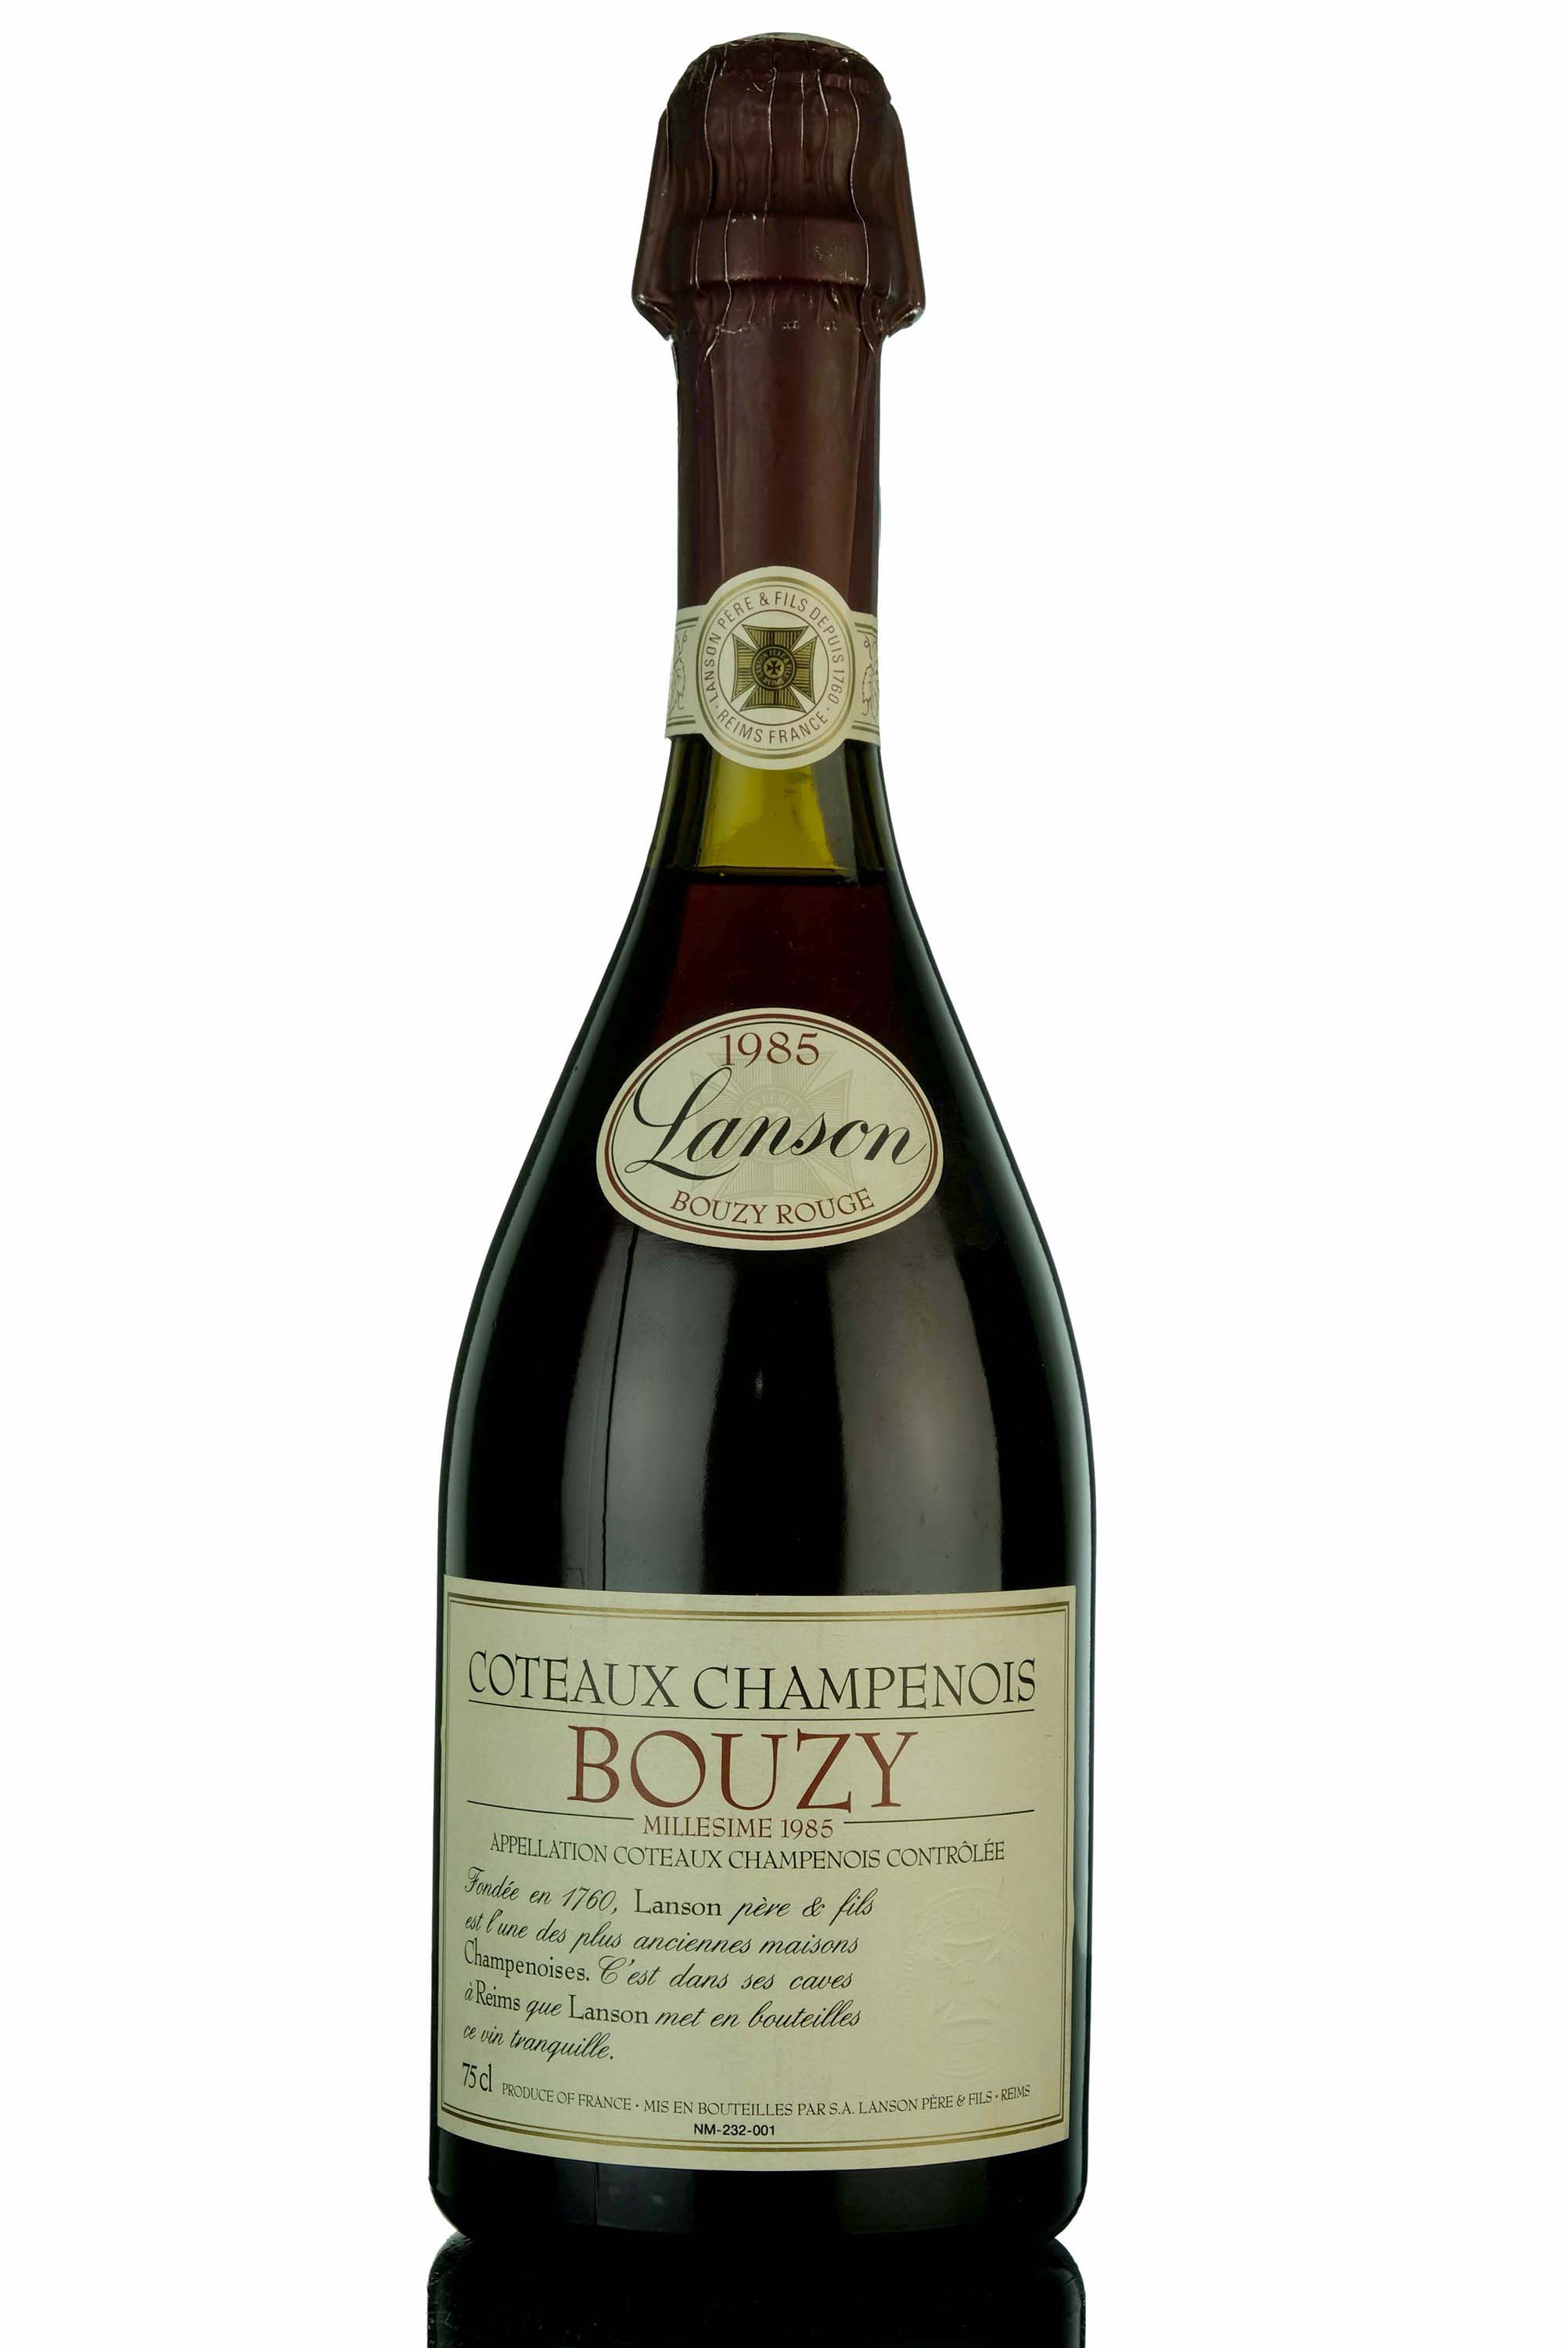 Lanson 1985 Coteaux Champenois Bouzy Rouge